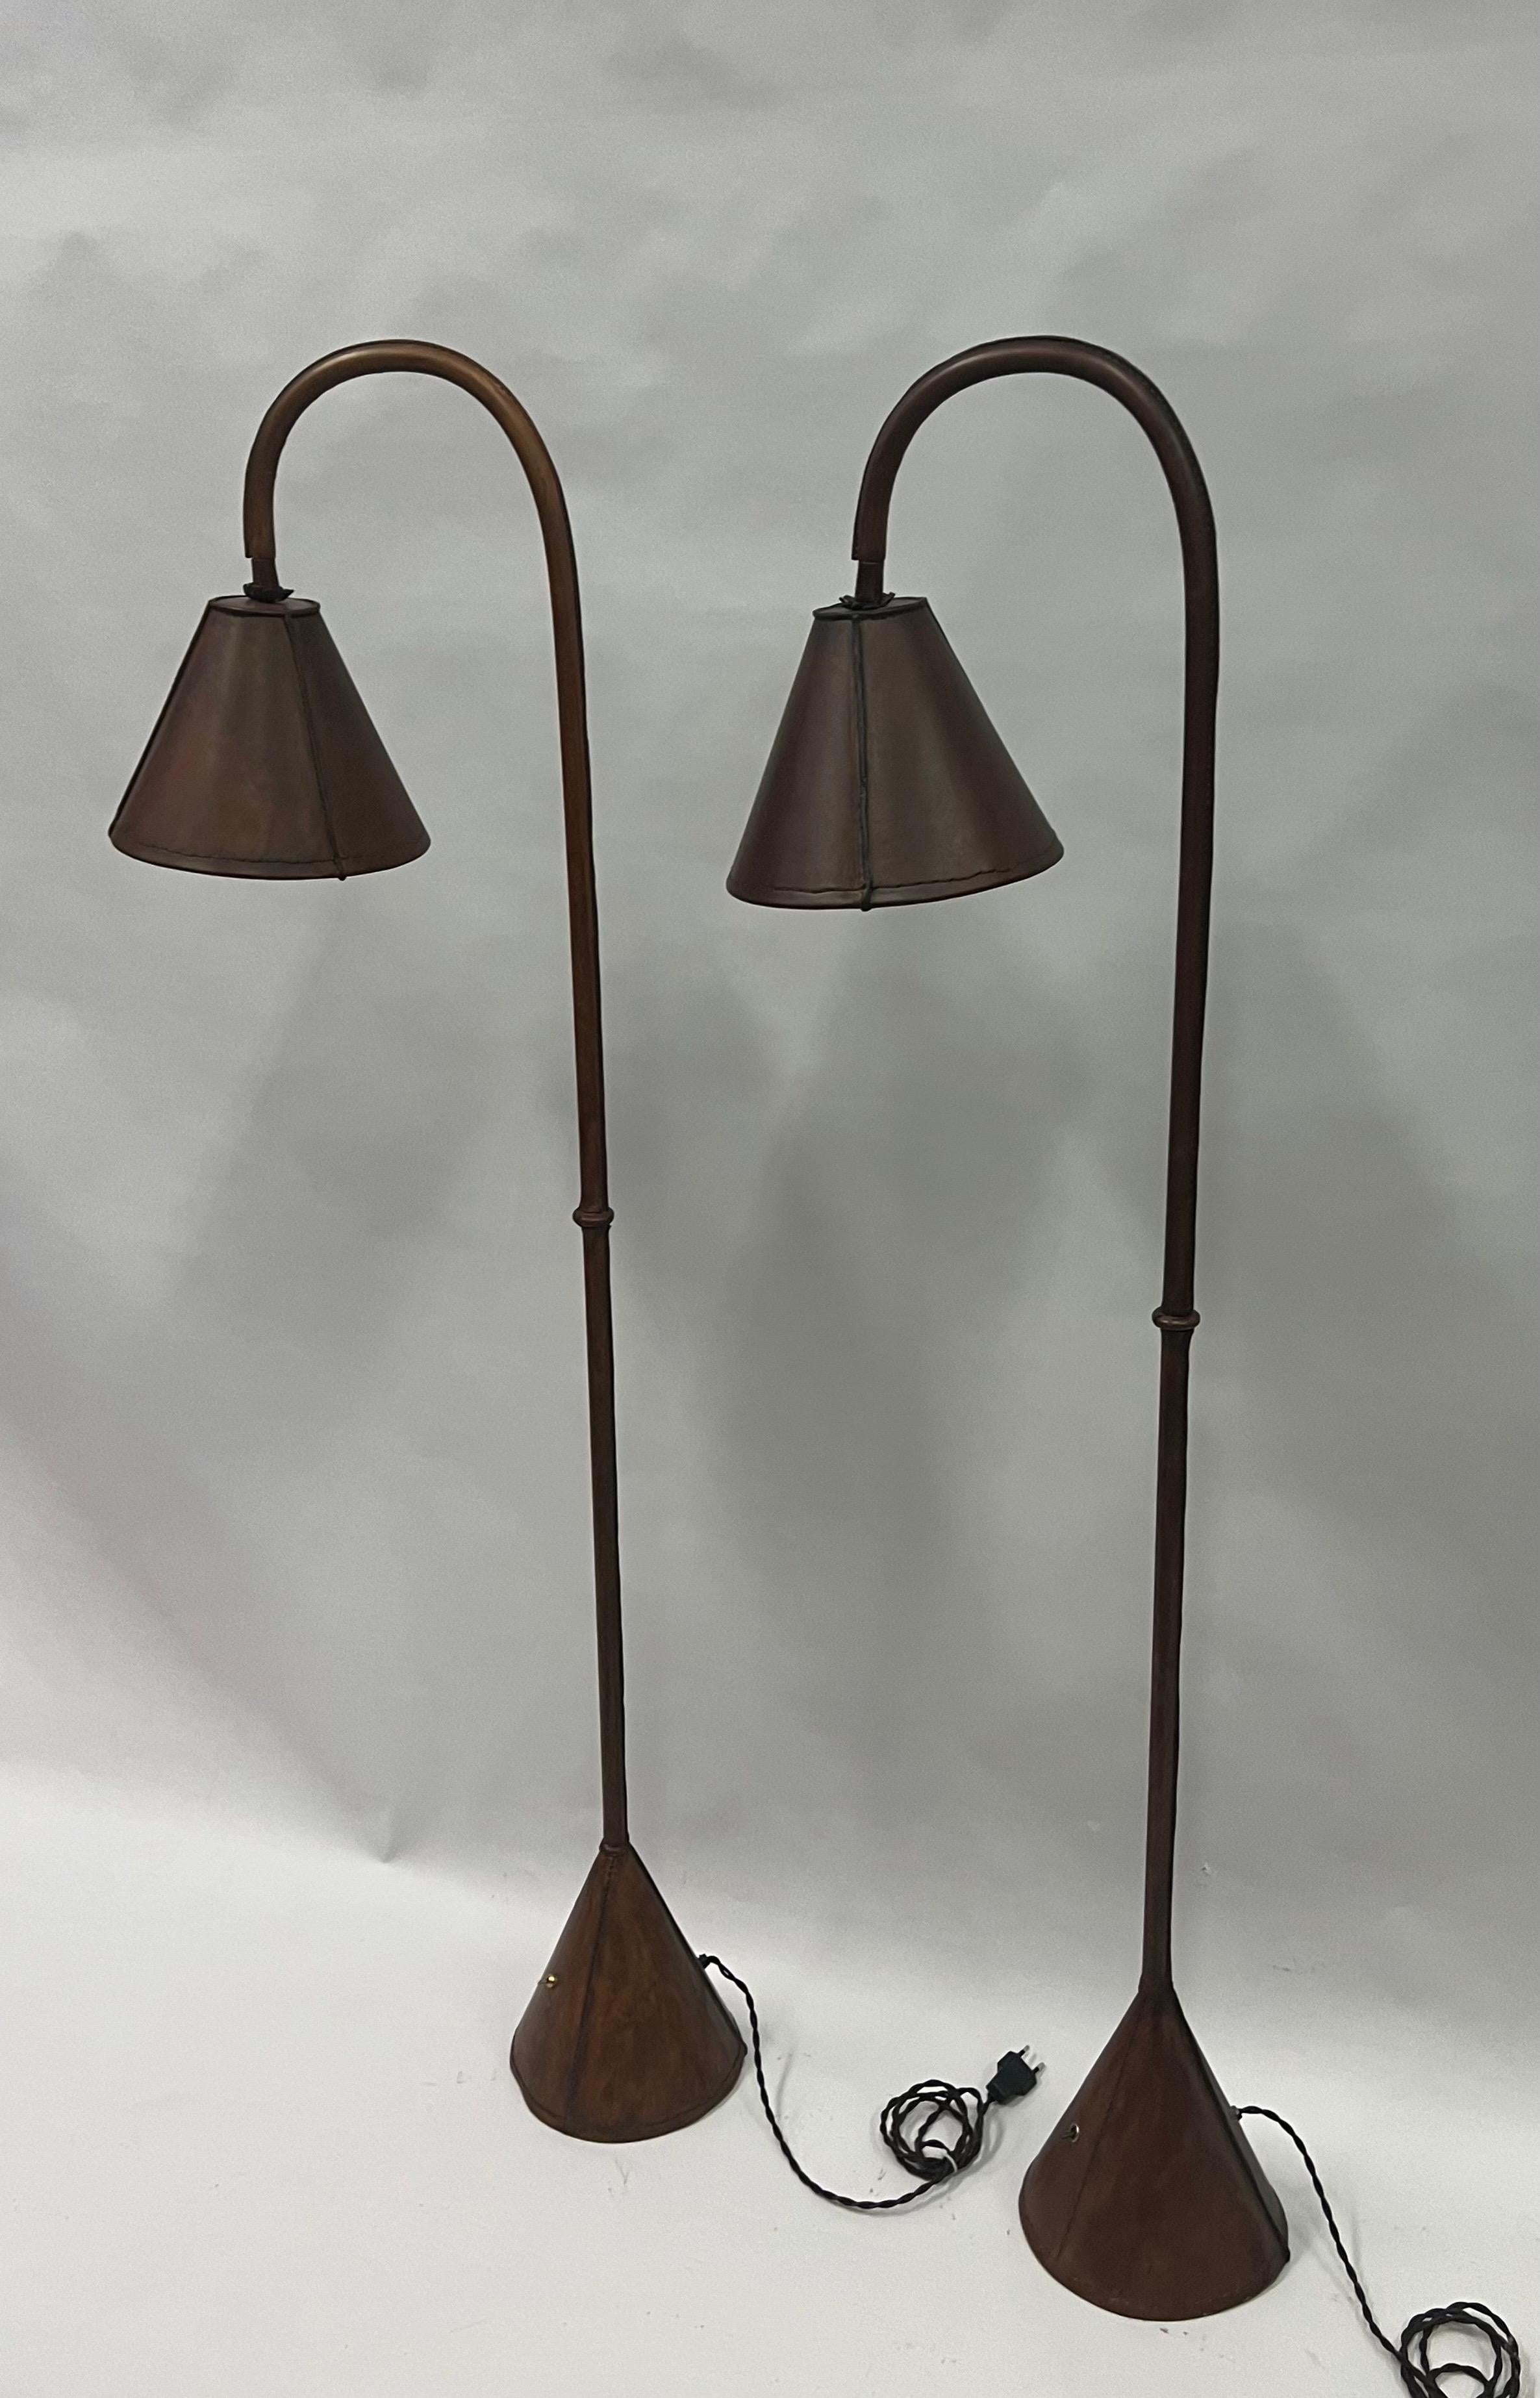 Elegantes und zeitloses Paar französischer Stehlampen aus dunkelbraunem Leder, handgenäht, von Jacques Adnet um 1950. Dieses klassische, handgefertigte Modell des renommierten französischen Designers Jacques Adnet gilt als Ikone des Designs und des